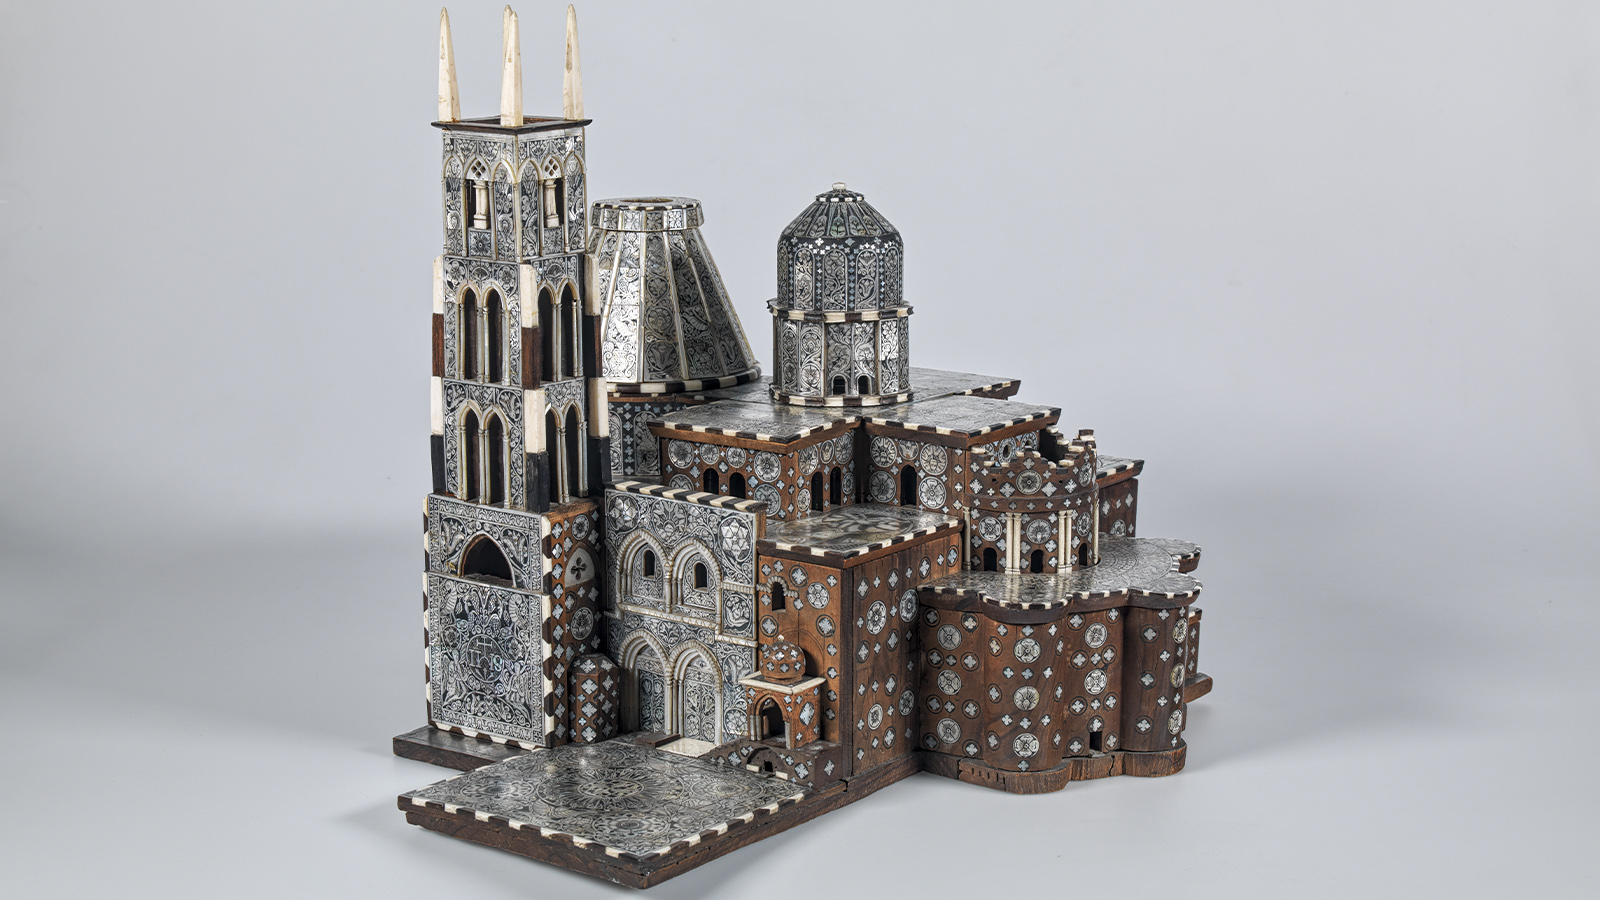 Modelo da Basílica do Santo Sepulcro [pormenor]. Jerusalém. Madeira, madre pérola. Coleção George M. Al Ama, Bethlehem.